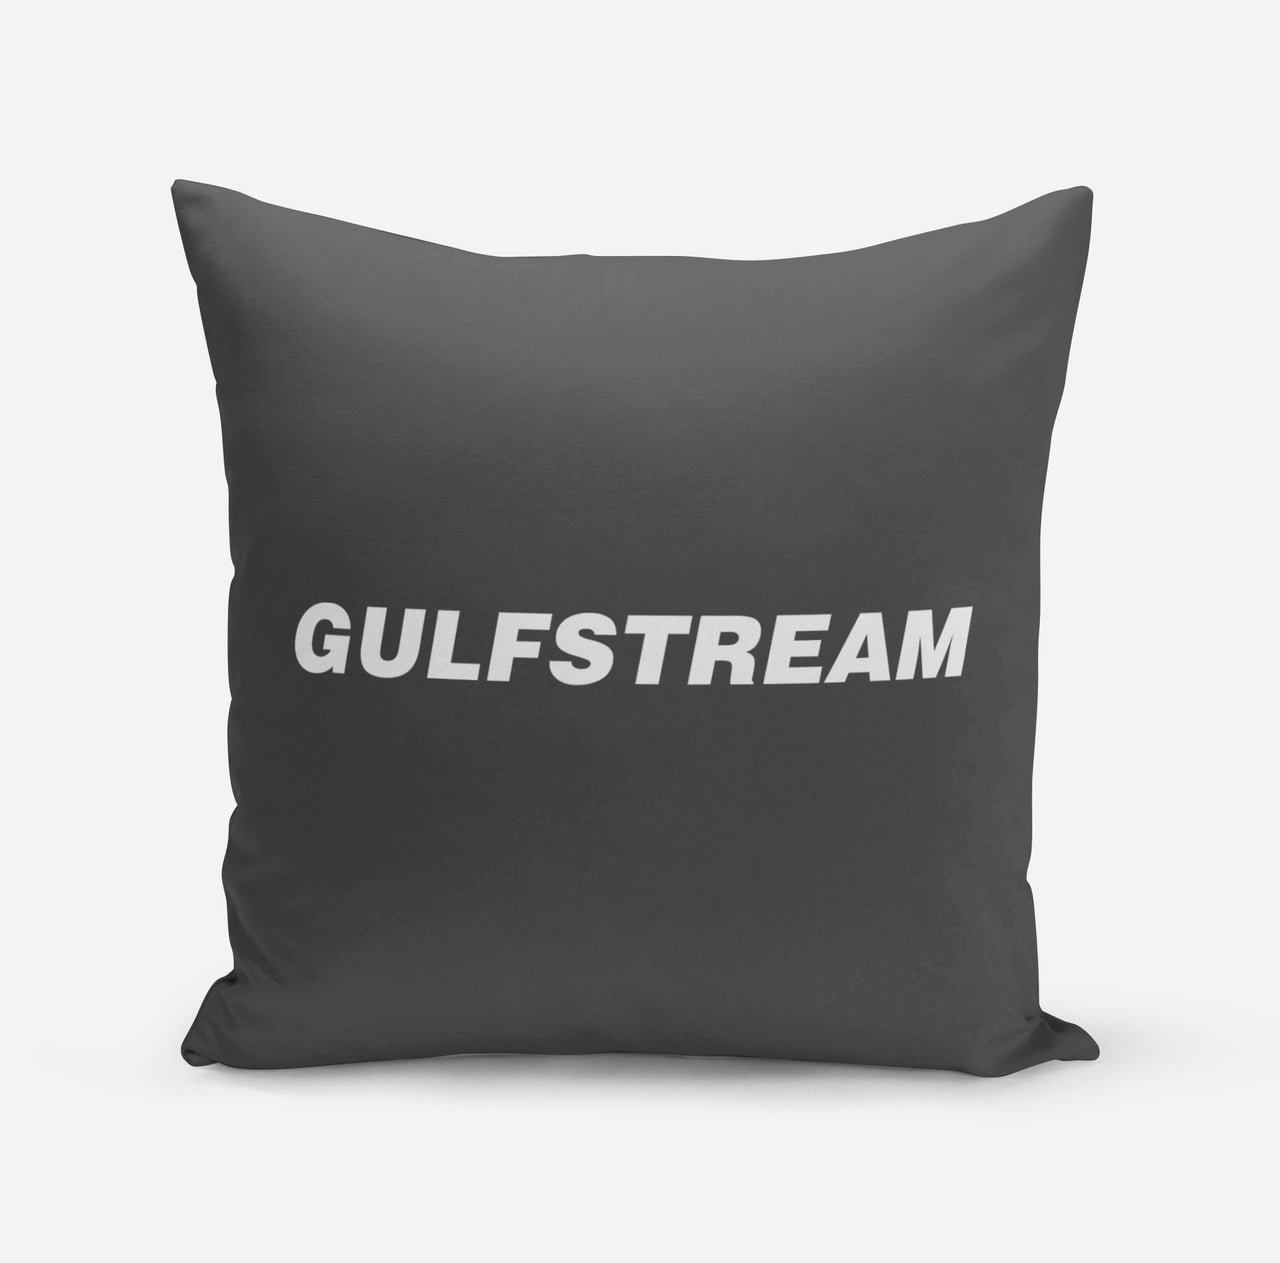 Gulfstream & Text Designed Pillows